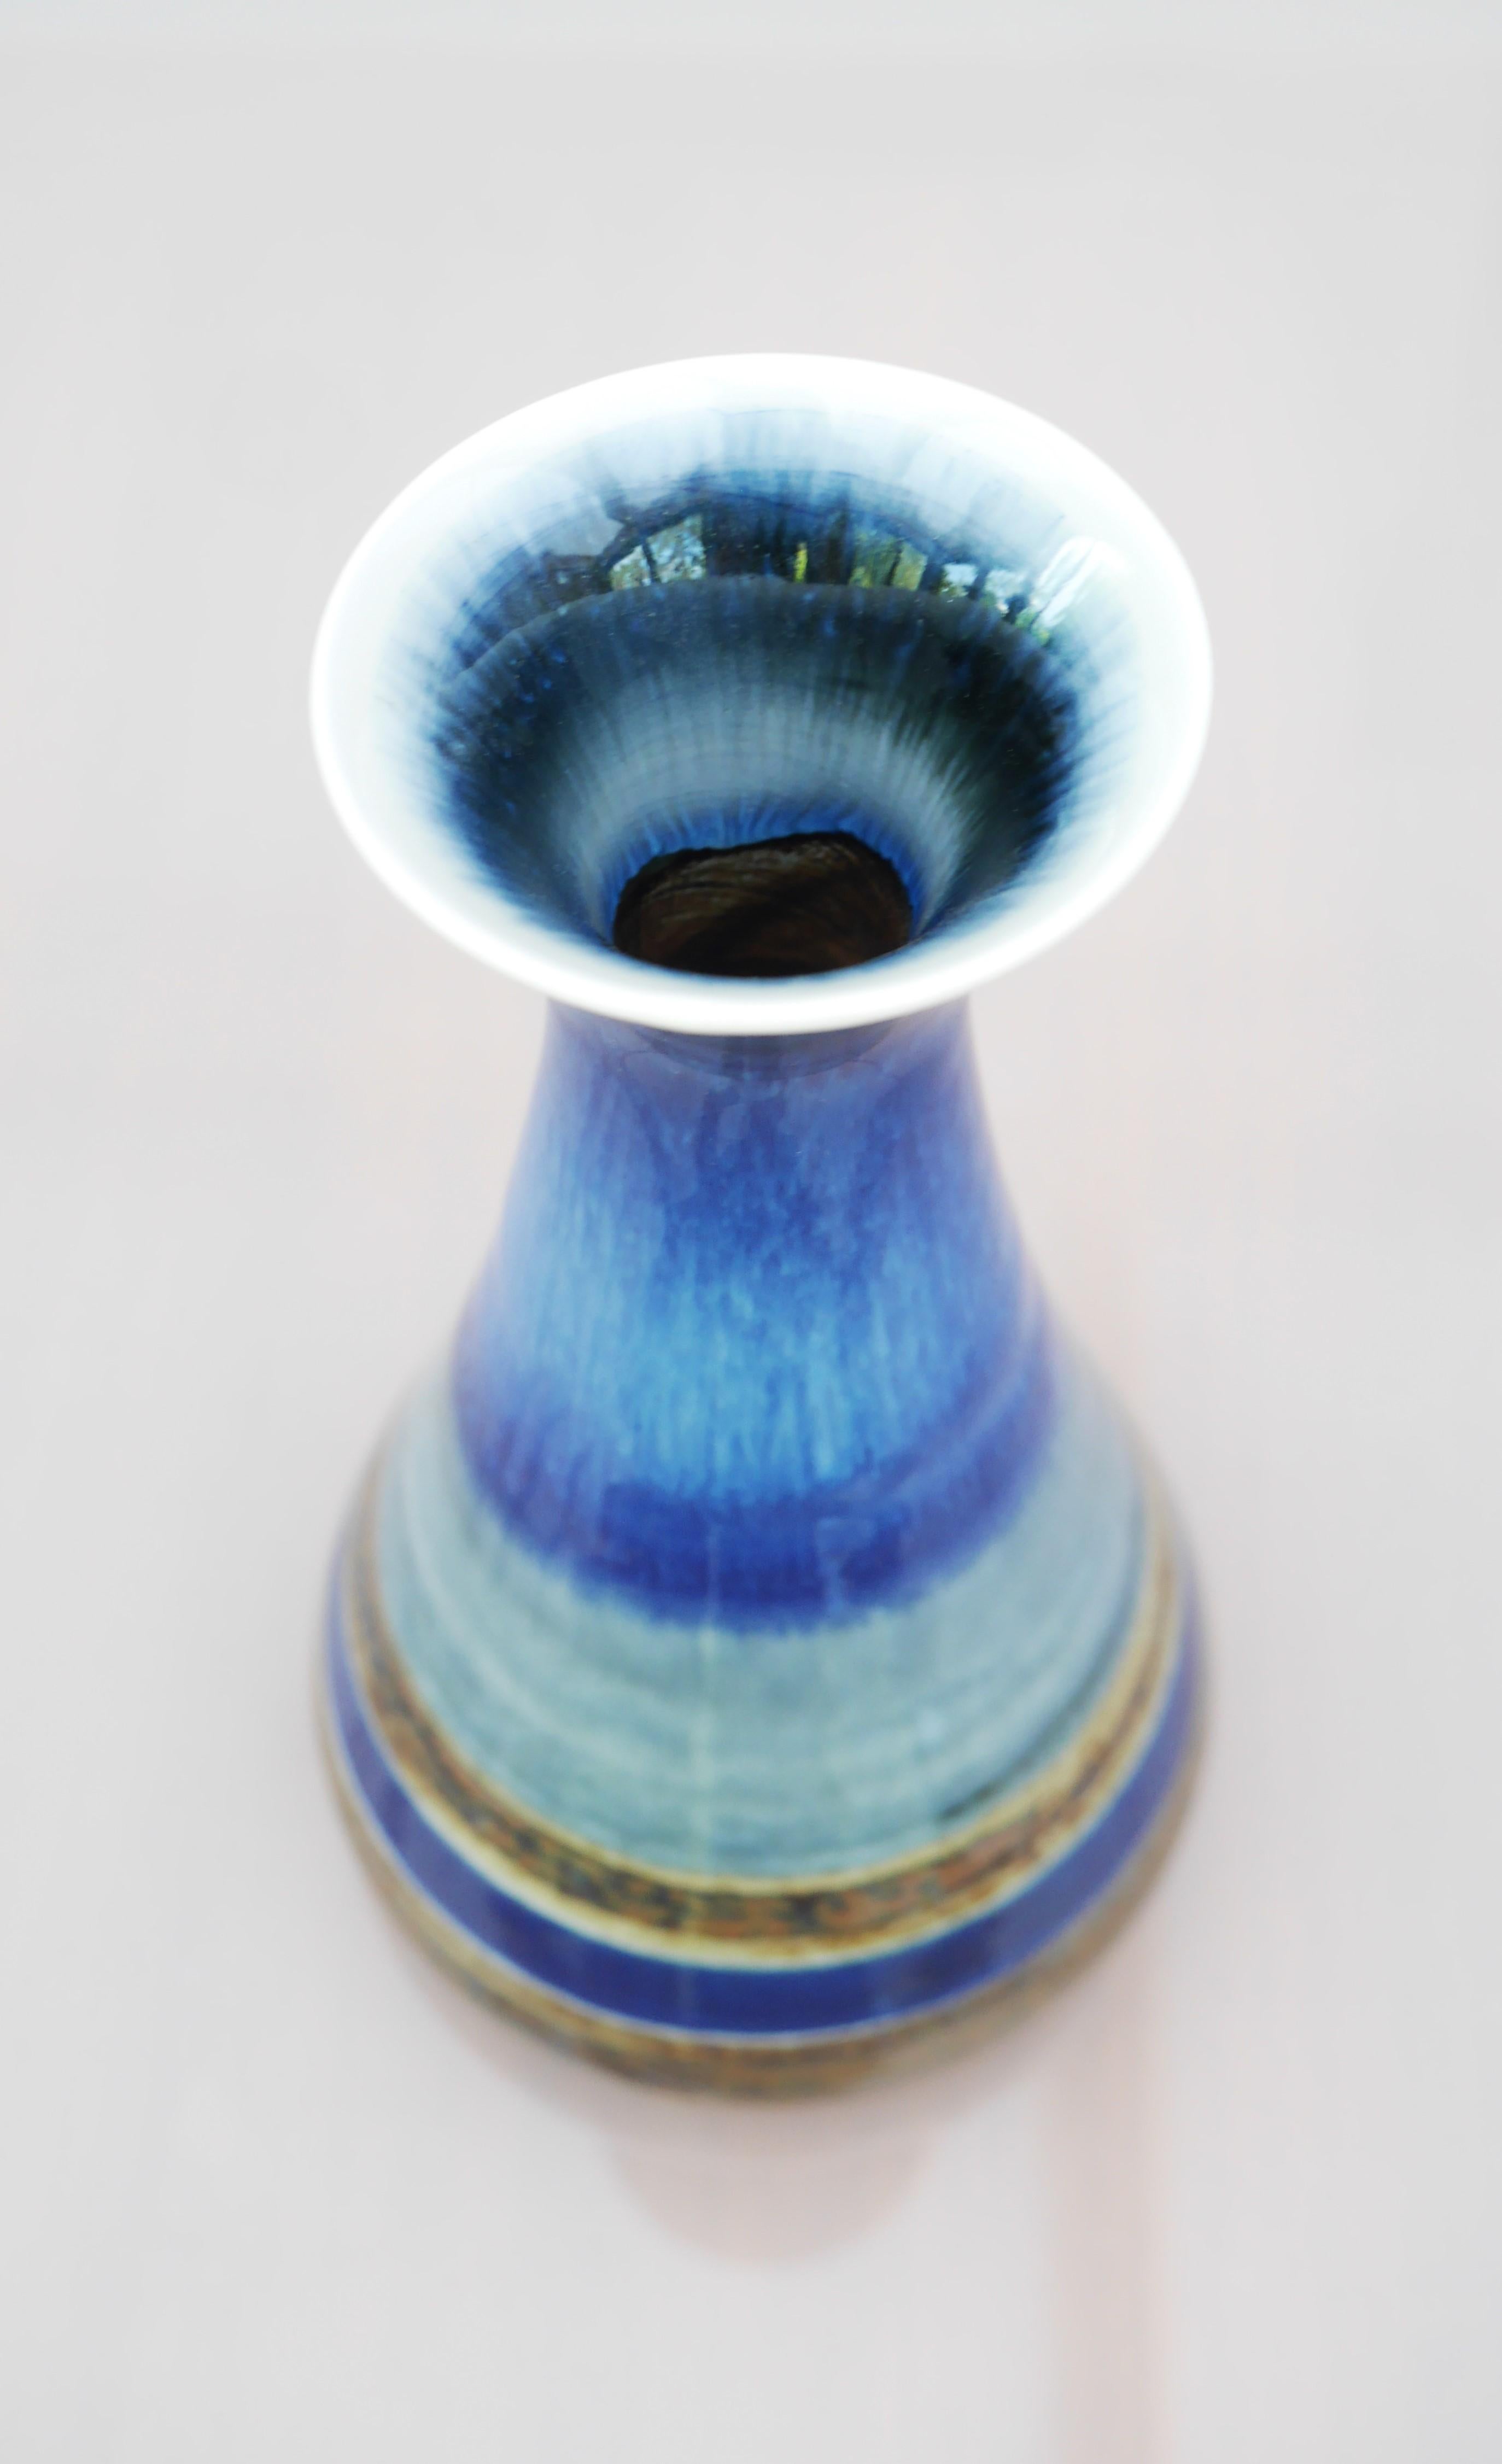 Glazed Mid-century modern pottery vase by G. Millberg for Rörstrand, Sweden. For Sale